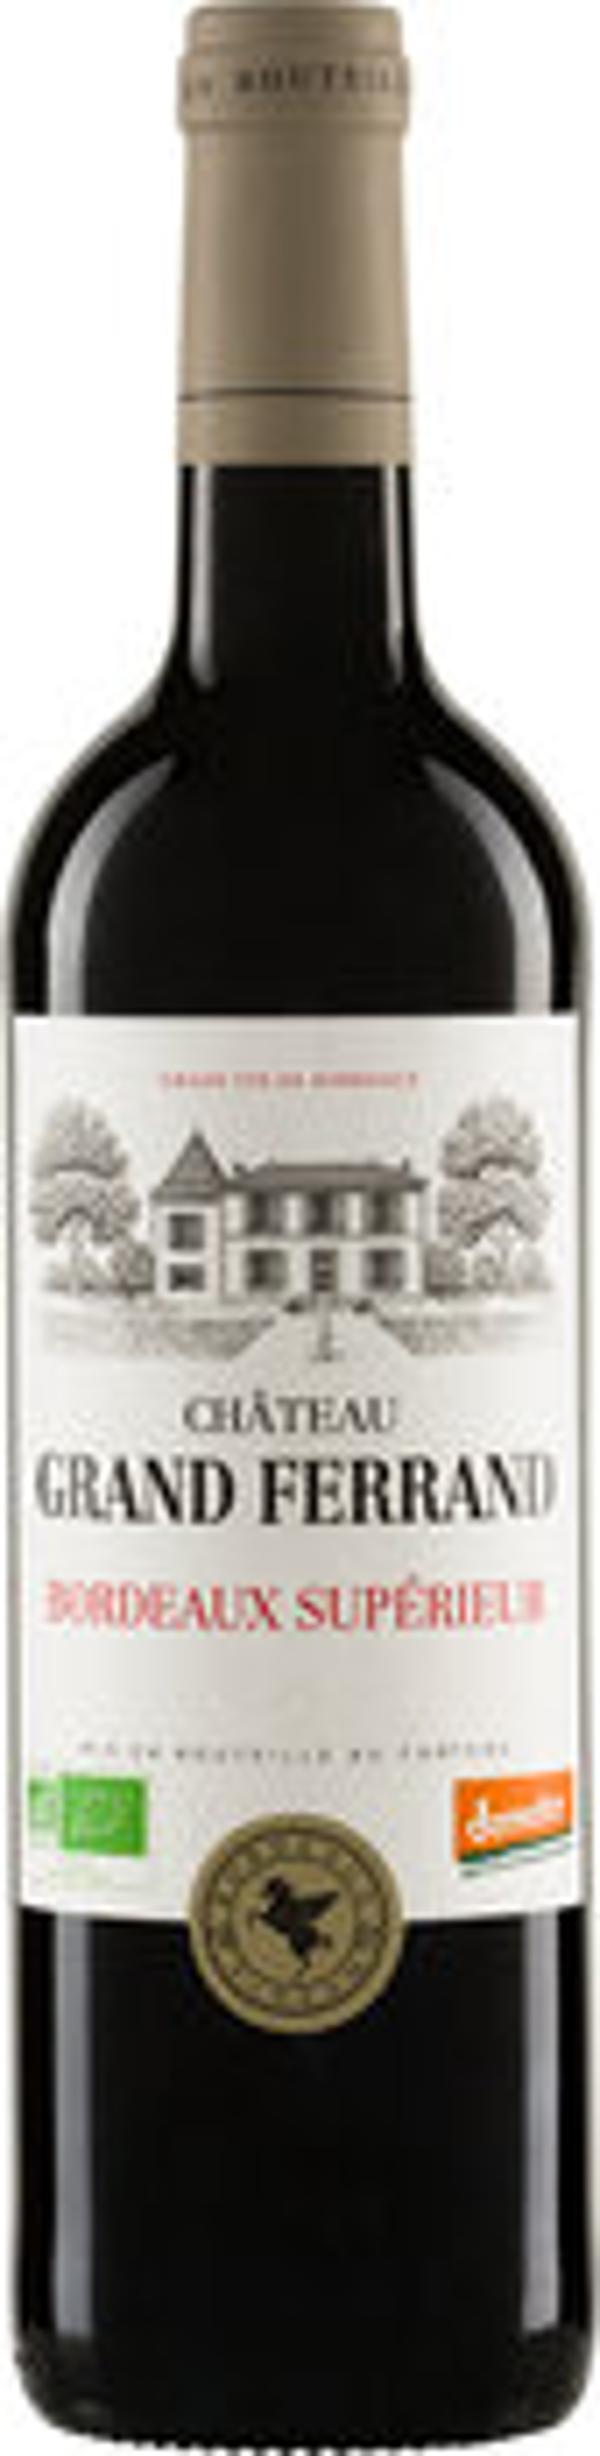 Produktfoto zu Château Grand Ferrand Bordeaux Supérieur AOP, trocken - 0,75l